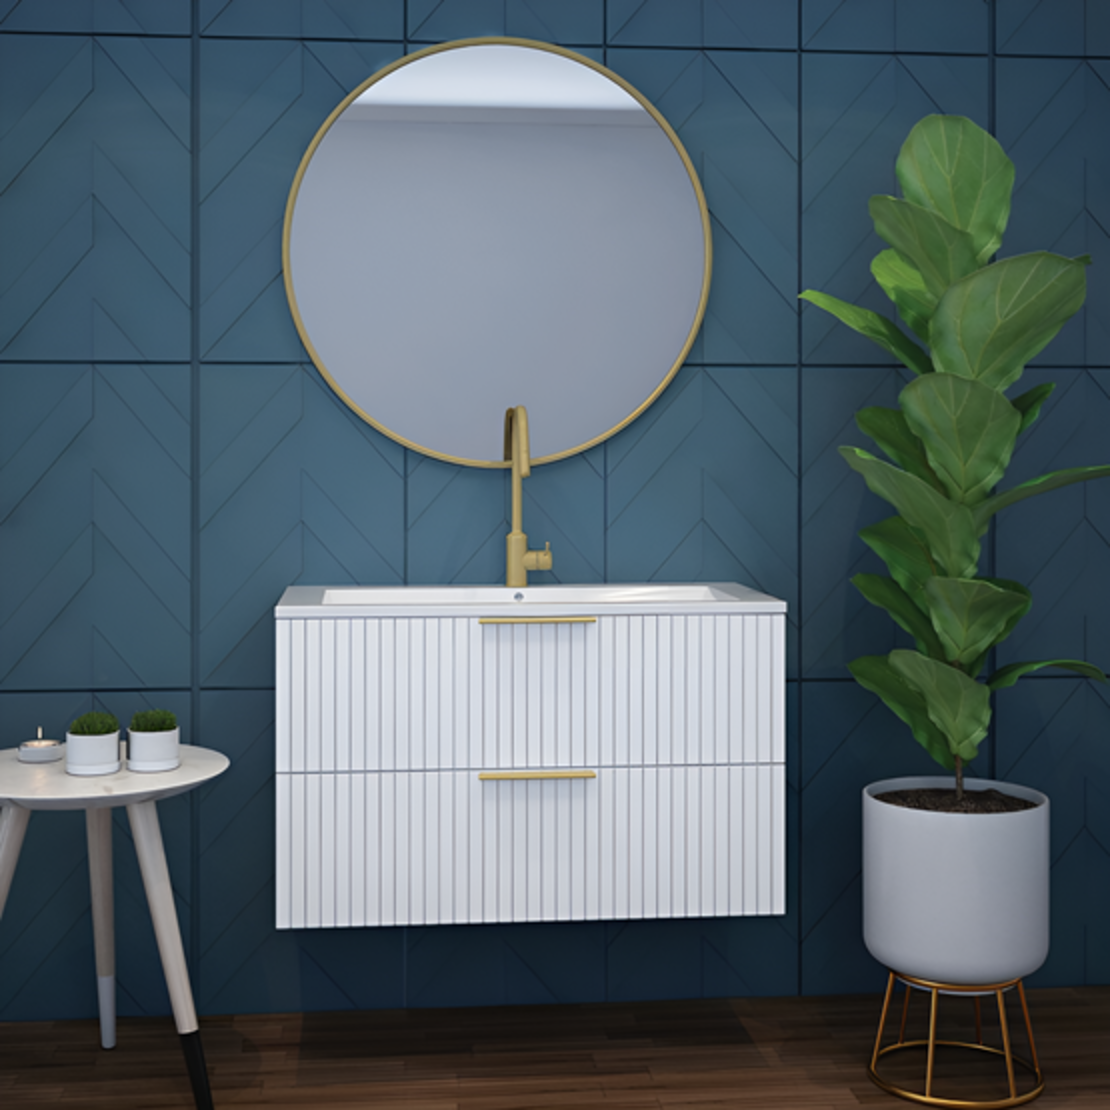 ארון אמבטיה תלוי דגם אסף לבן כולל מראה עגולה